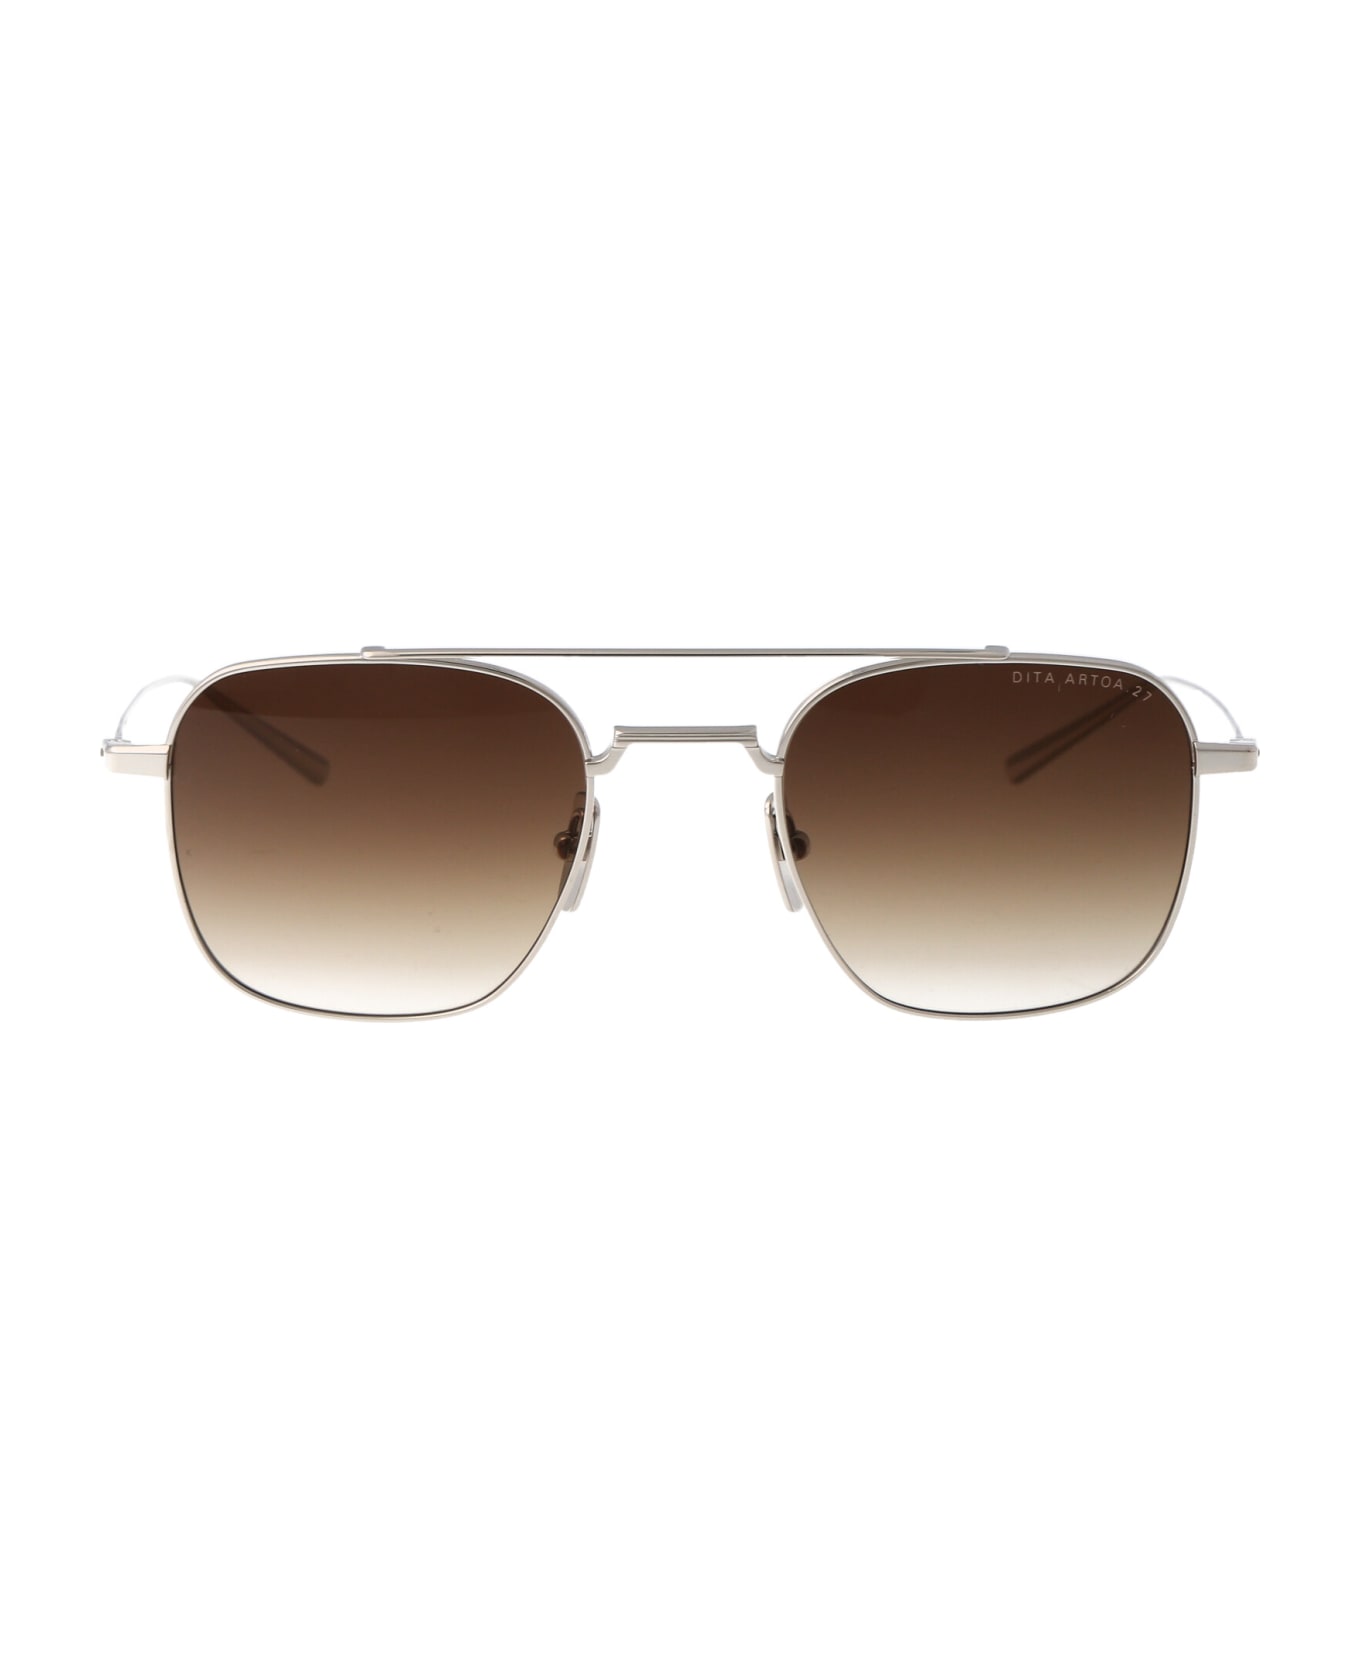 Dita Artoa.27 Sunglasses - Silver w/ Brown to Clear Gradient